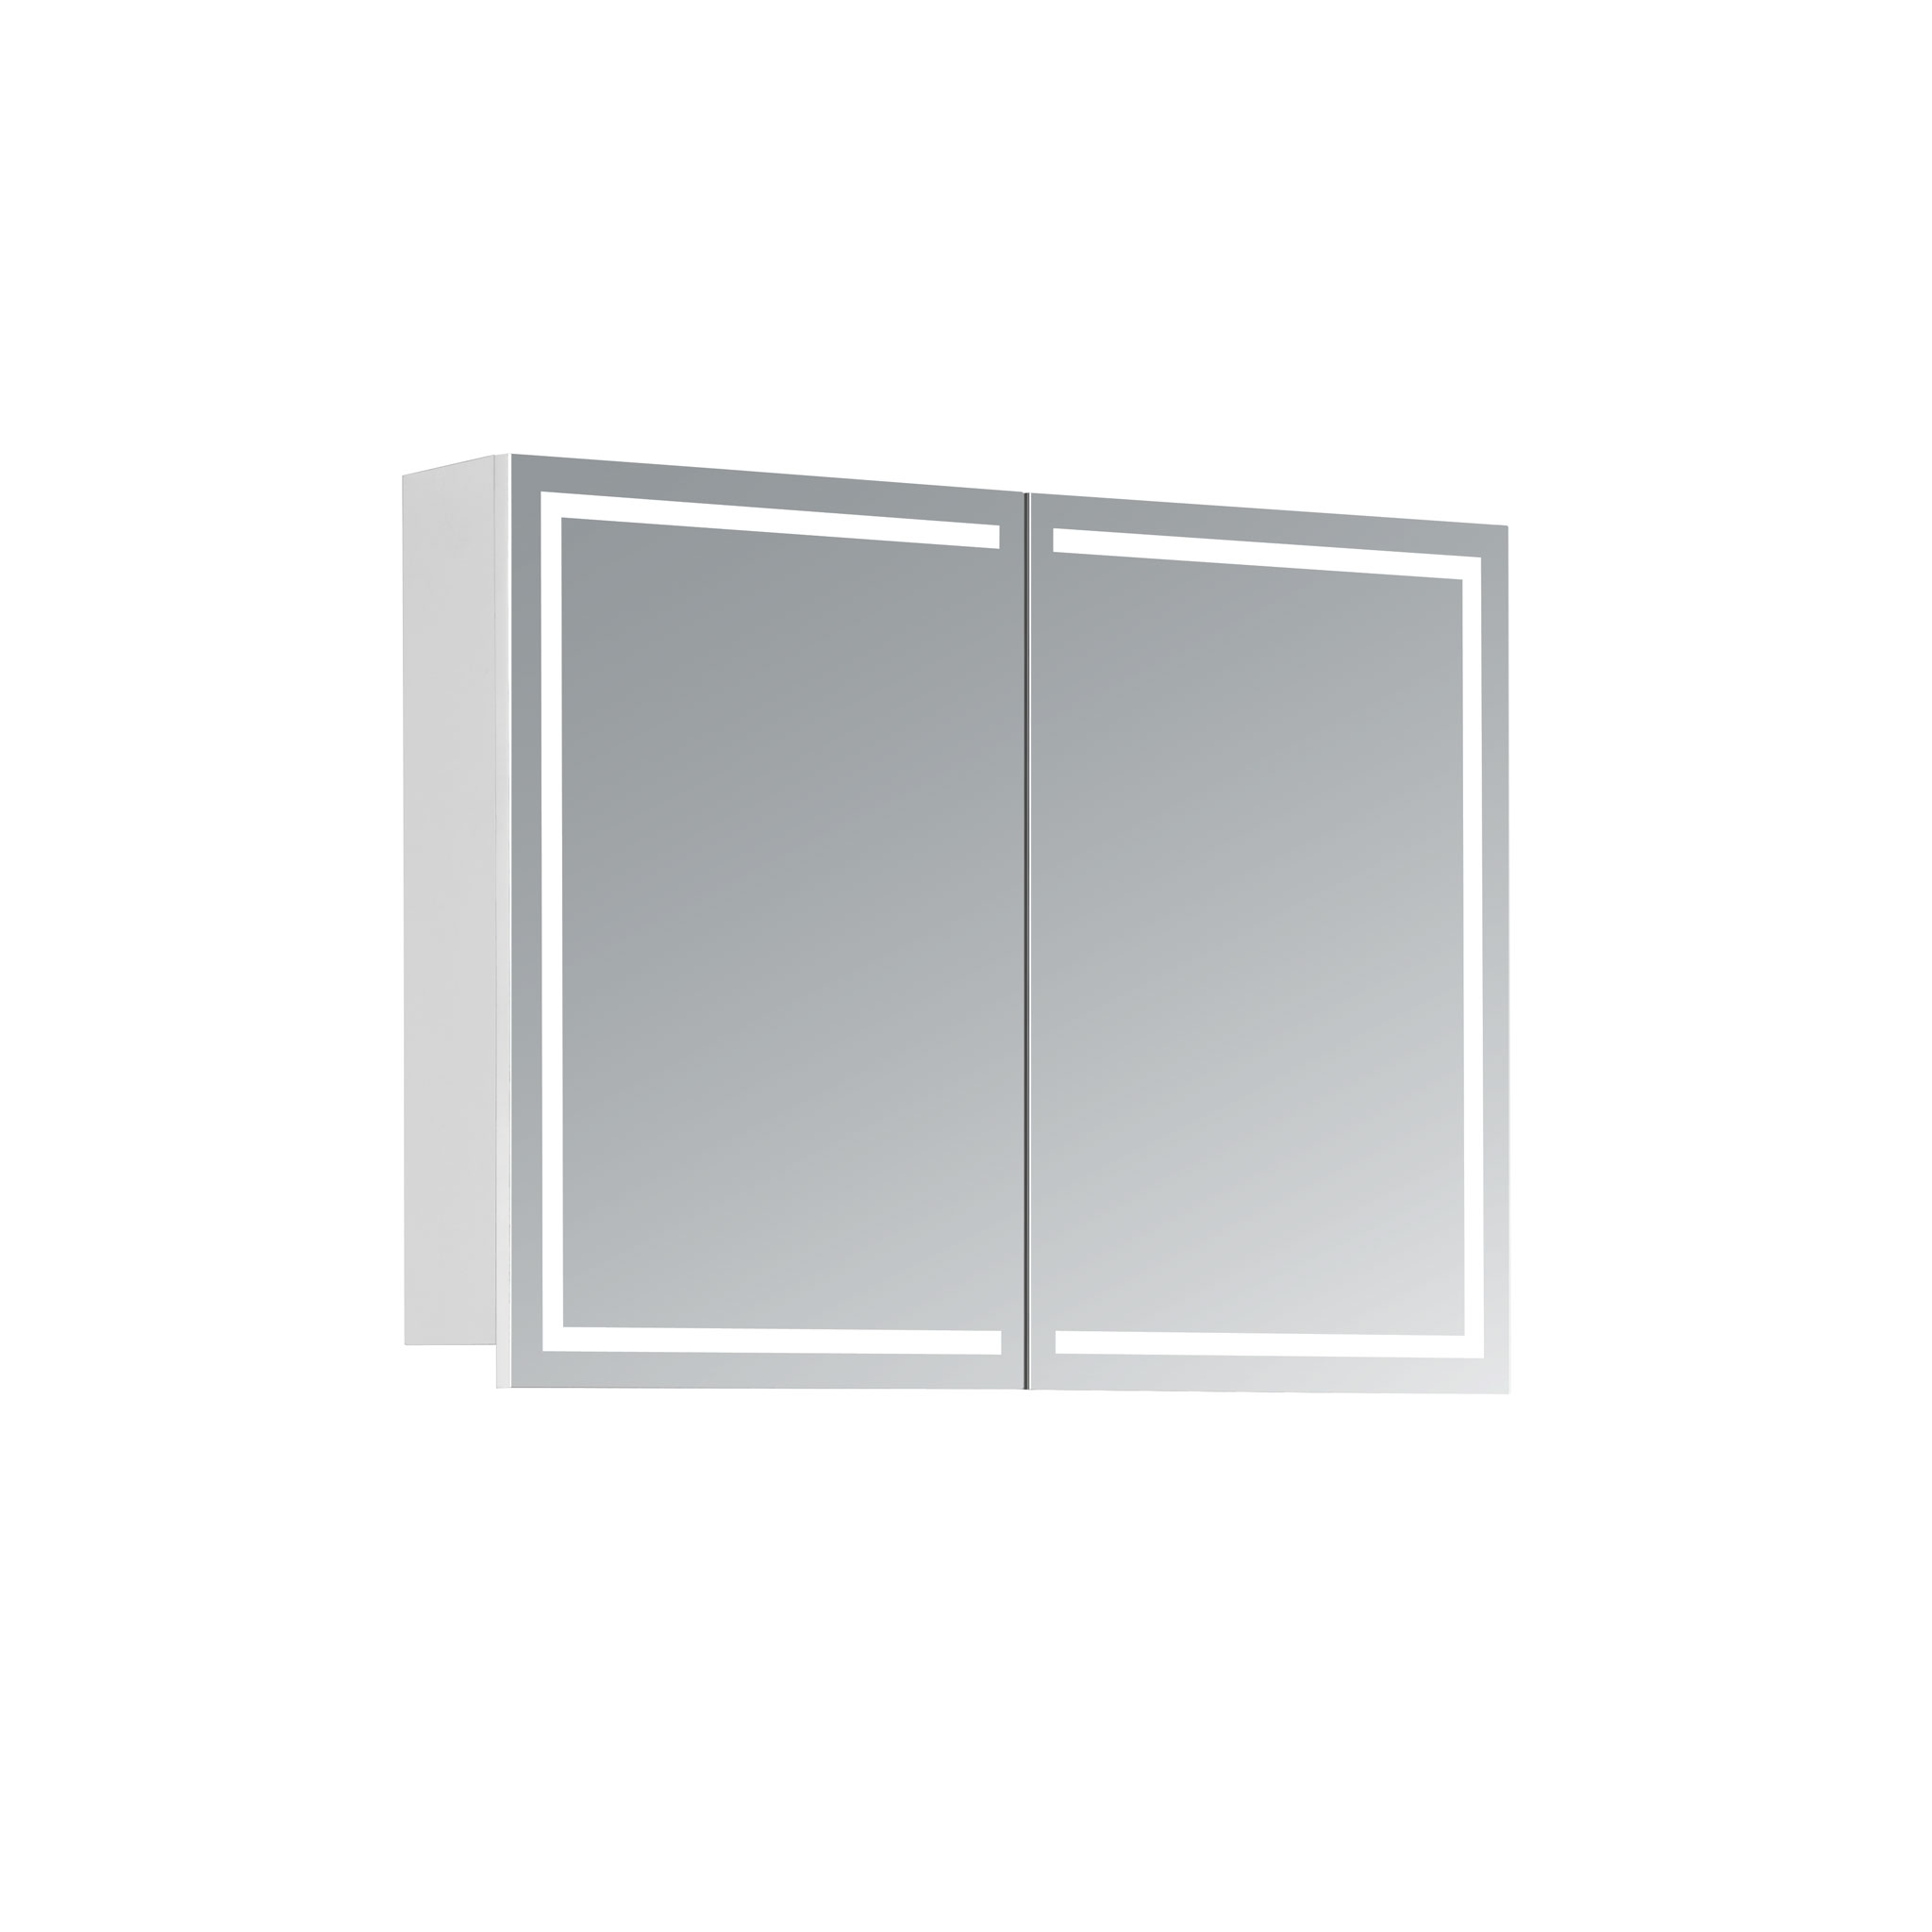 Led zrkadlo do kúpeľne, moderná zrkadlová skrinka Milano, 80 cm, moderná kúpeľňa, led zrkadlo, skrinka s podsvietením | www.zrkadloveskrinky.eu